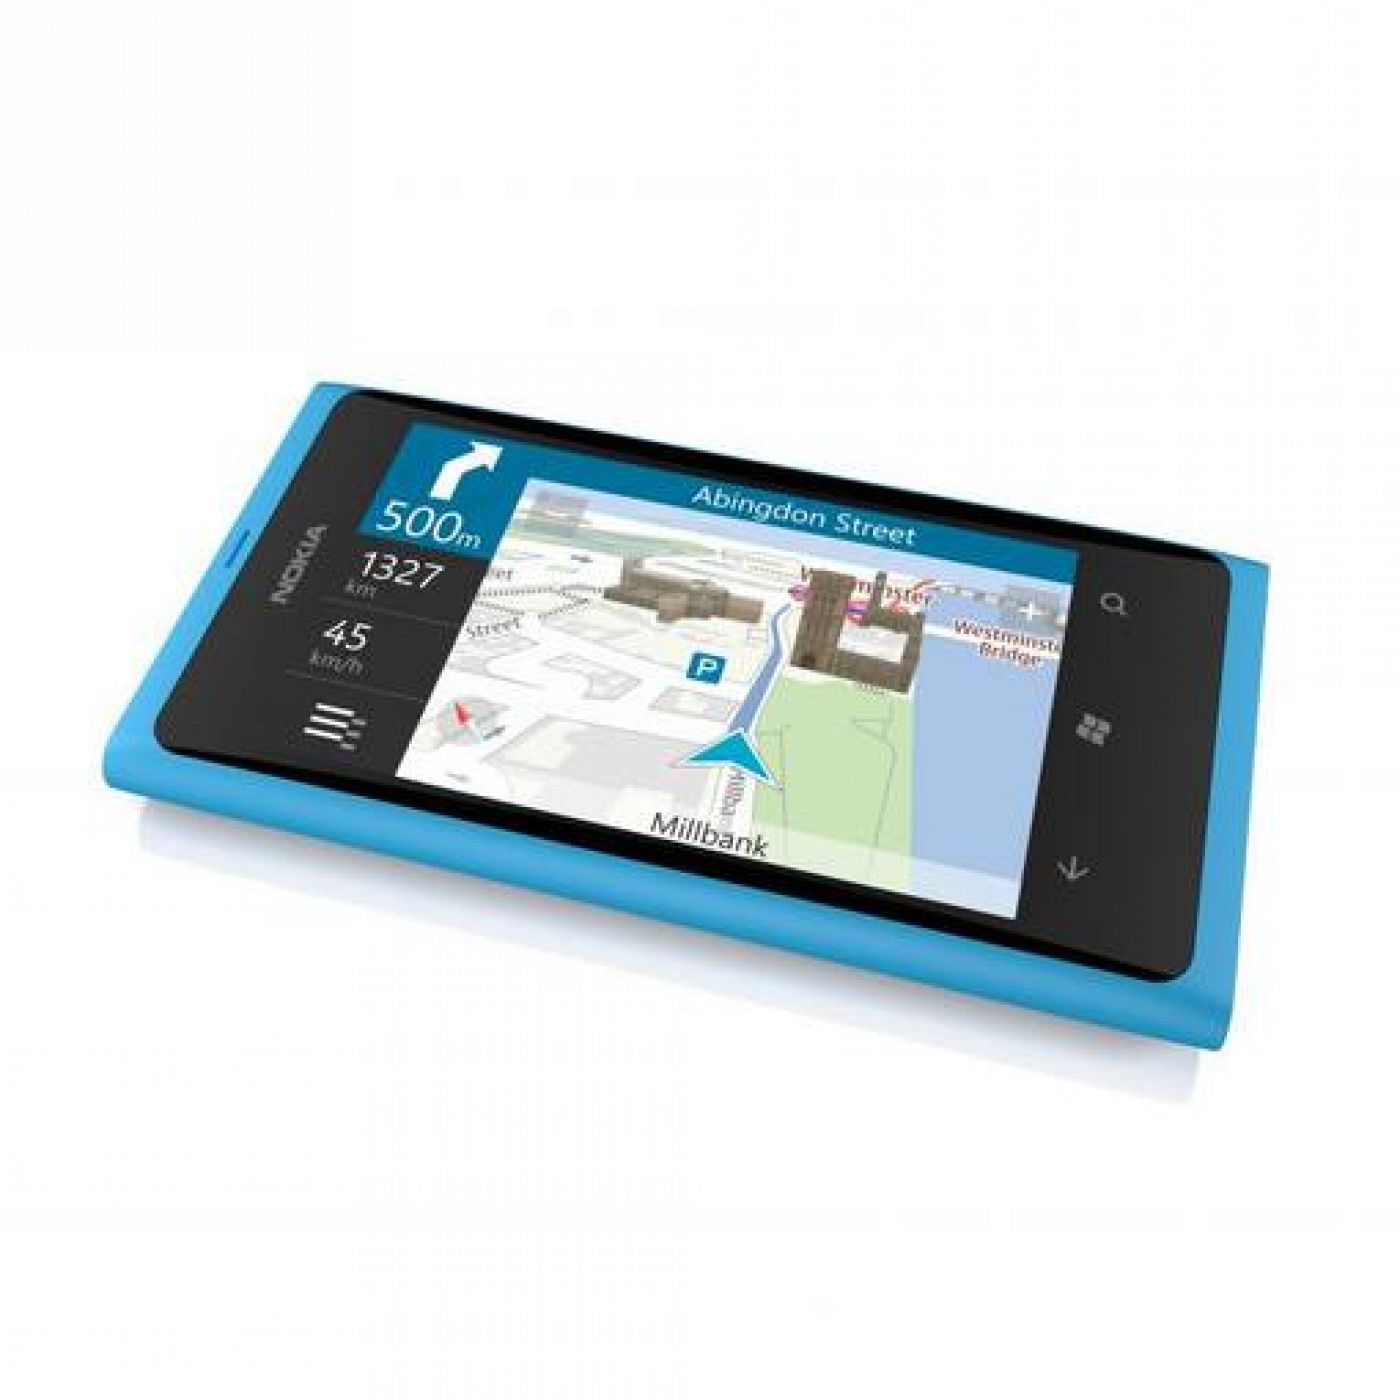  Nokia Lumia 800, uno de los dos móviles con Windows Phone presentados por Nokia